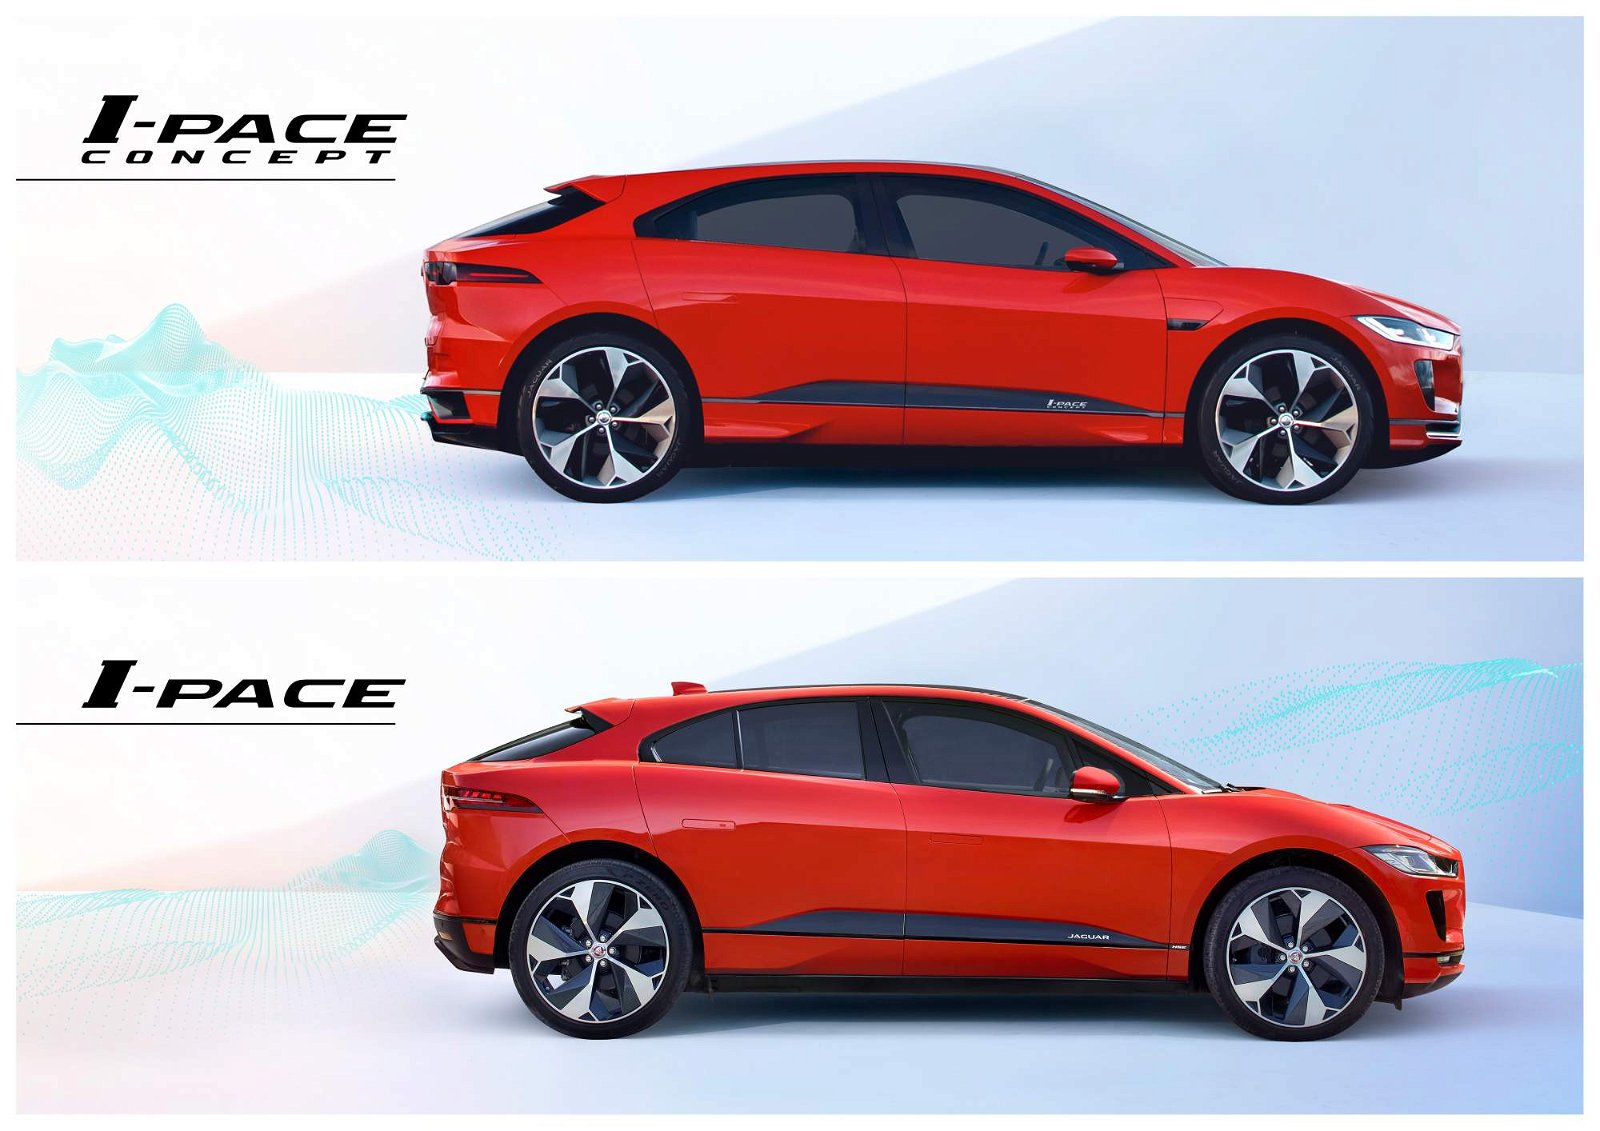 2019-Jaguar-I-Pace-Concept-vs-production-car